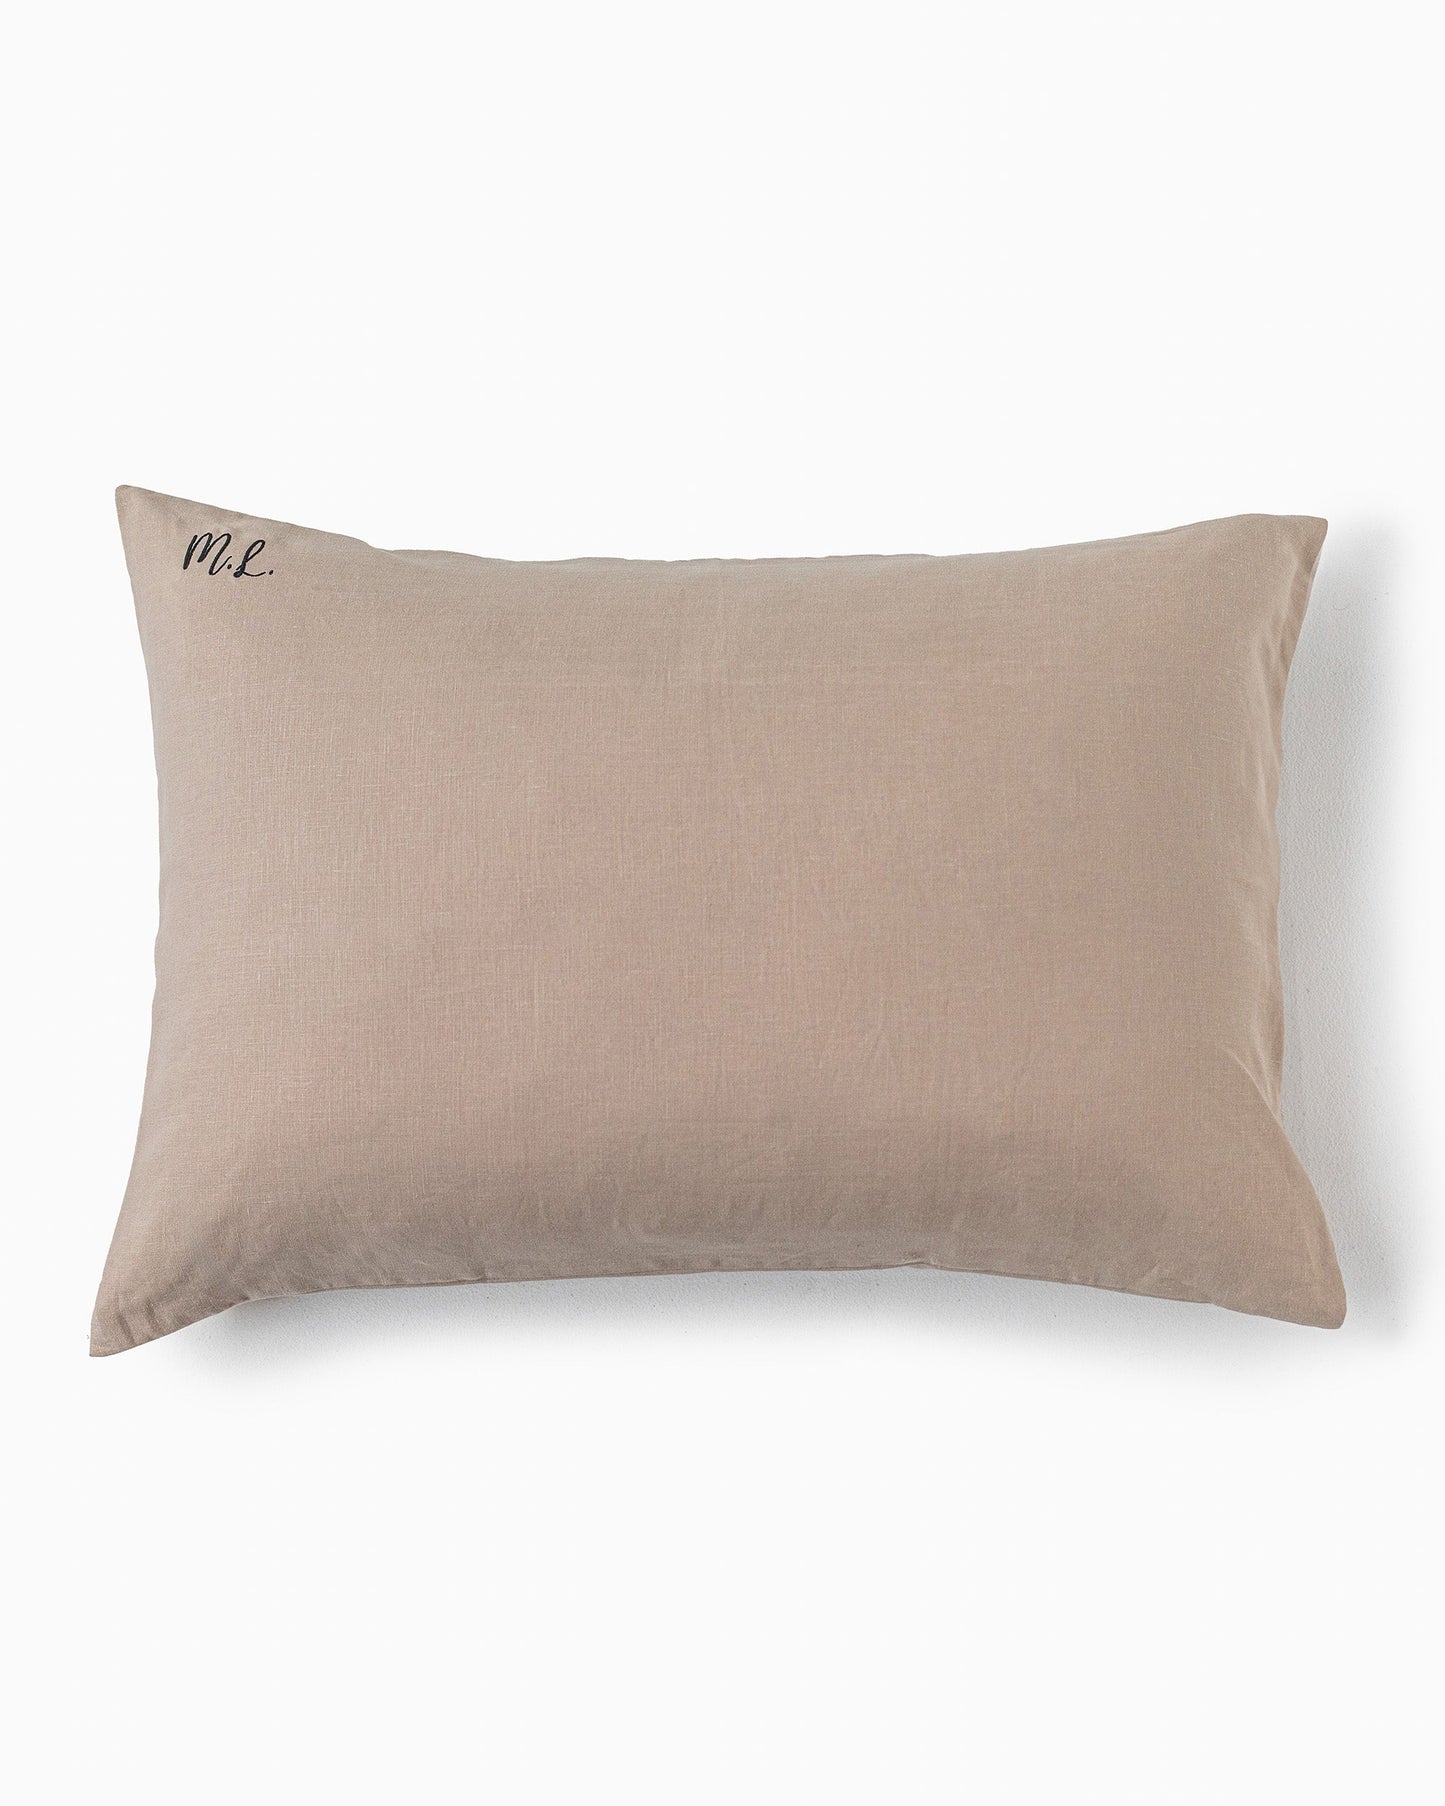 Sandy beige linen pillowcase - MagicLinen